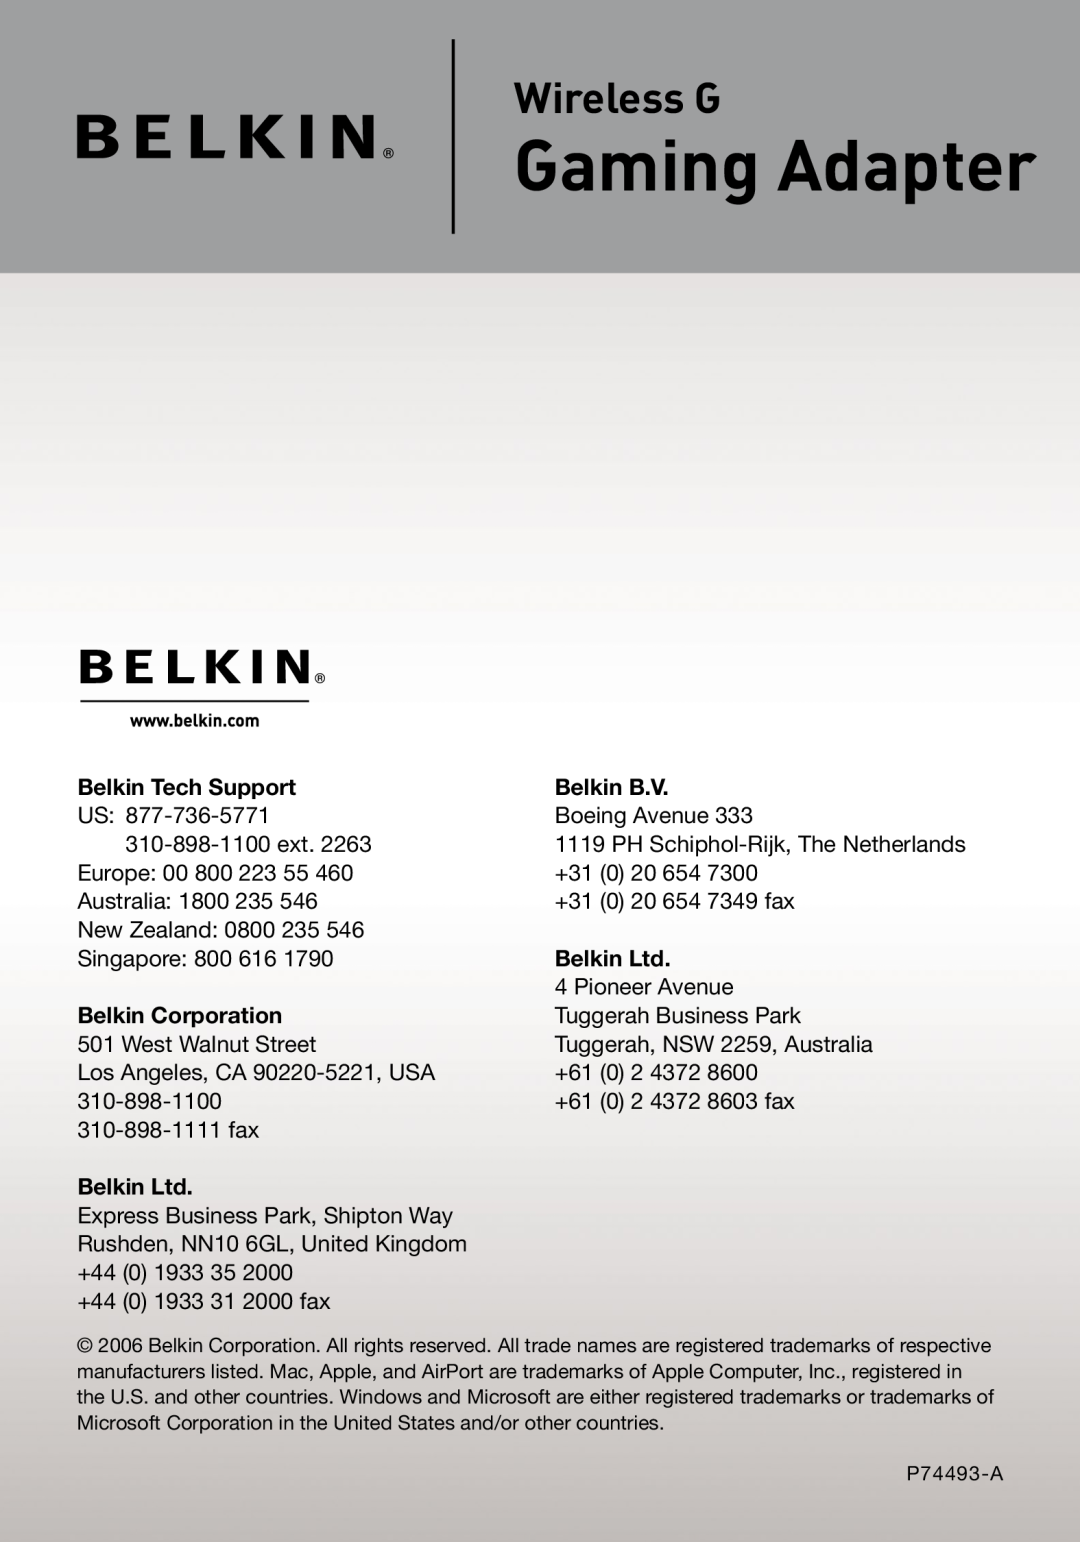 Belkin F5D7330 manual Gaming Adapter, Wireless G, Belkin Tech Support, Belkin B.V, Belkin Corporation 